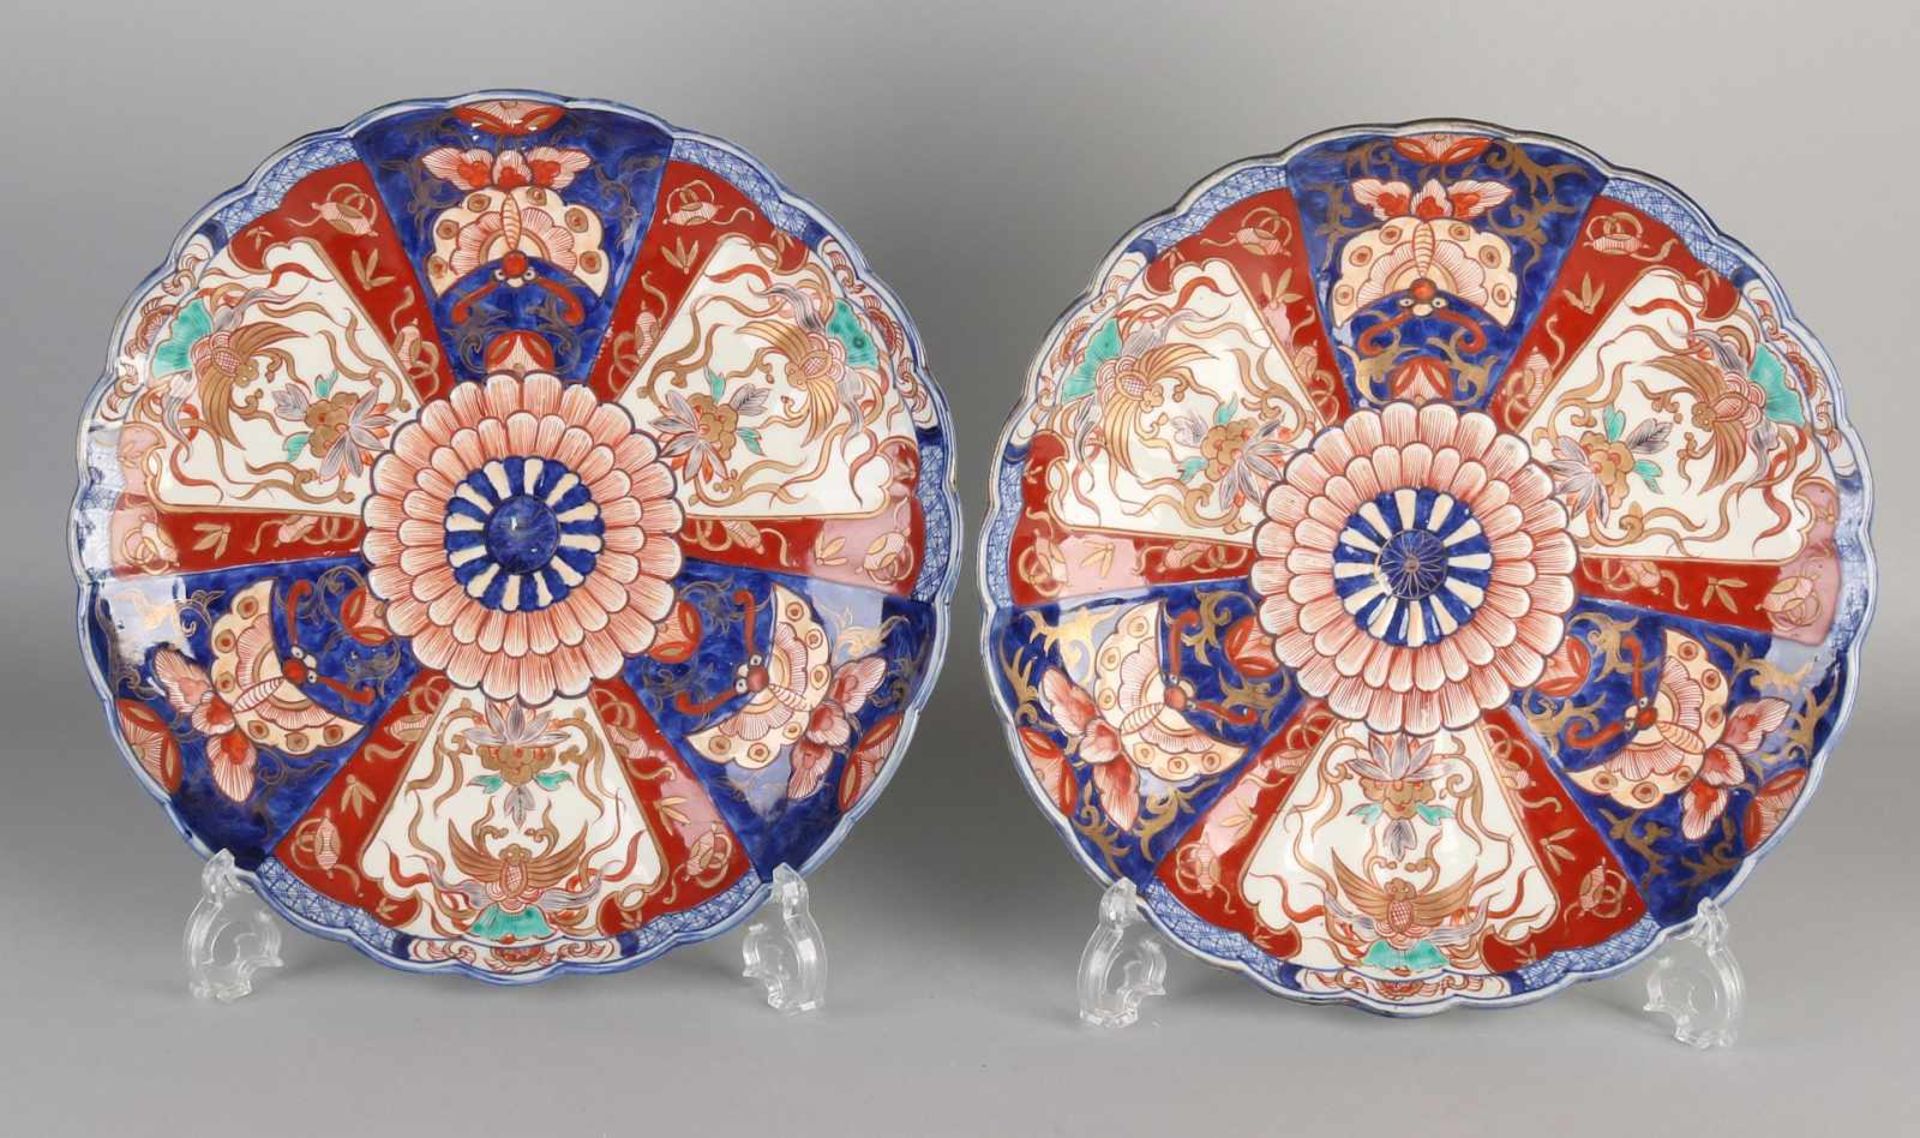 Zwei schöne große dekorative Imari-Porzellangeschirr aus dem 19. Jahrhundert. Vertrag abgeschlossen.